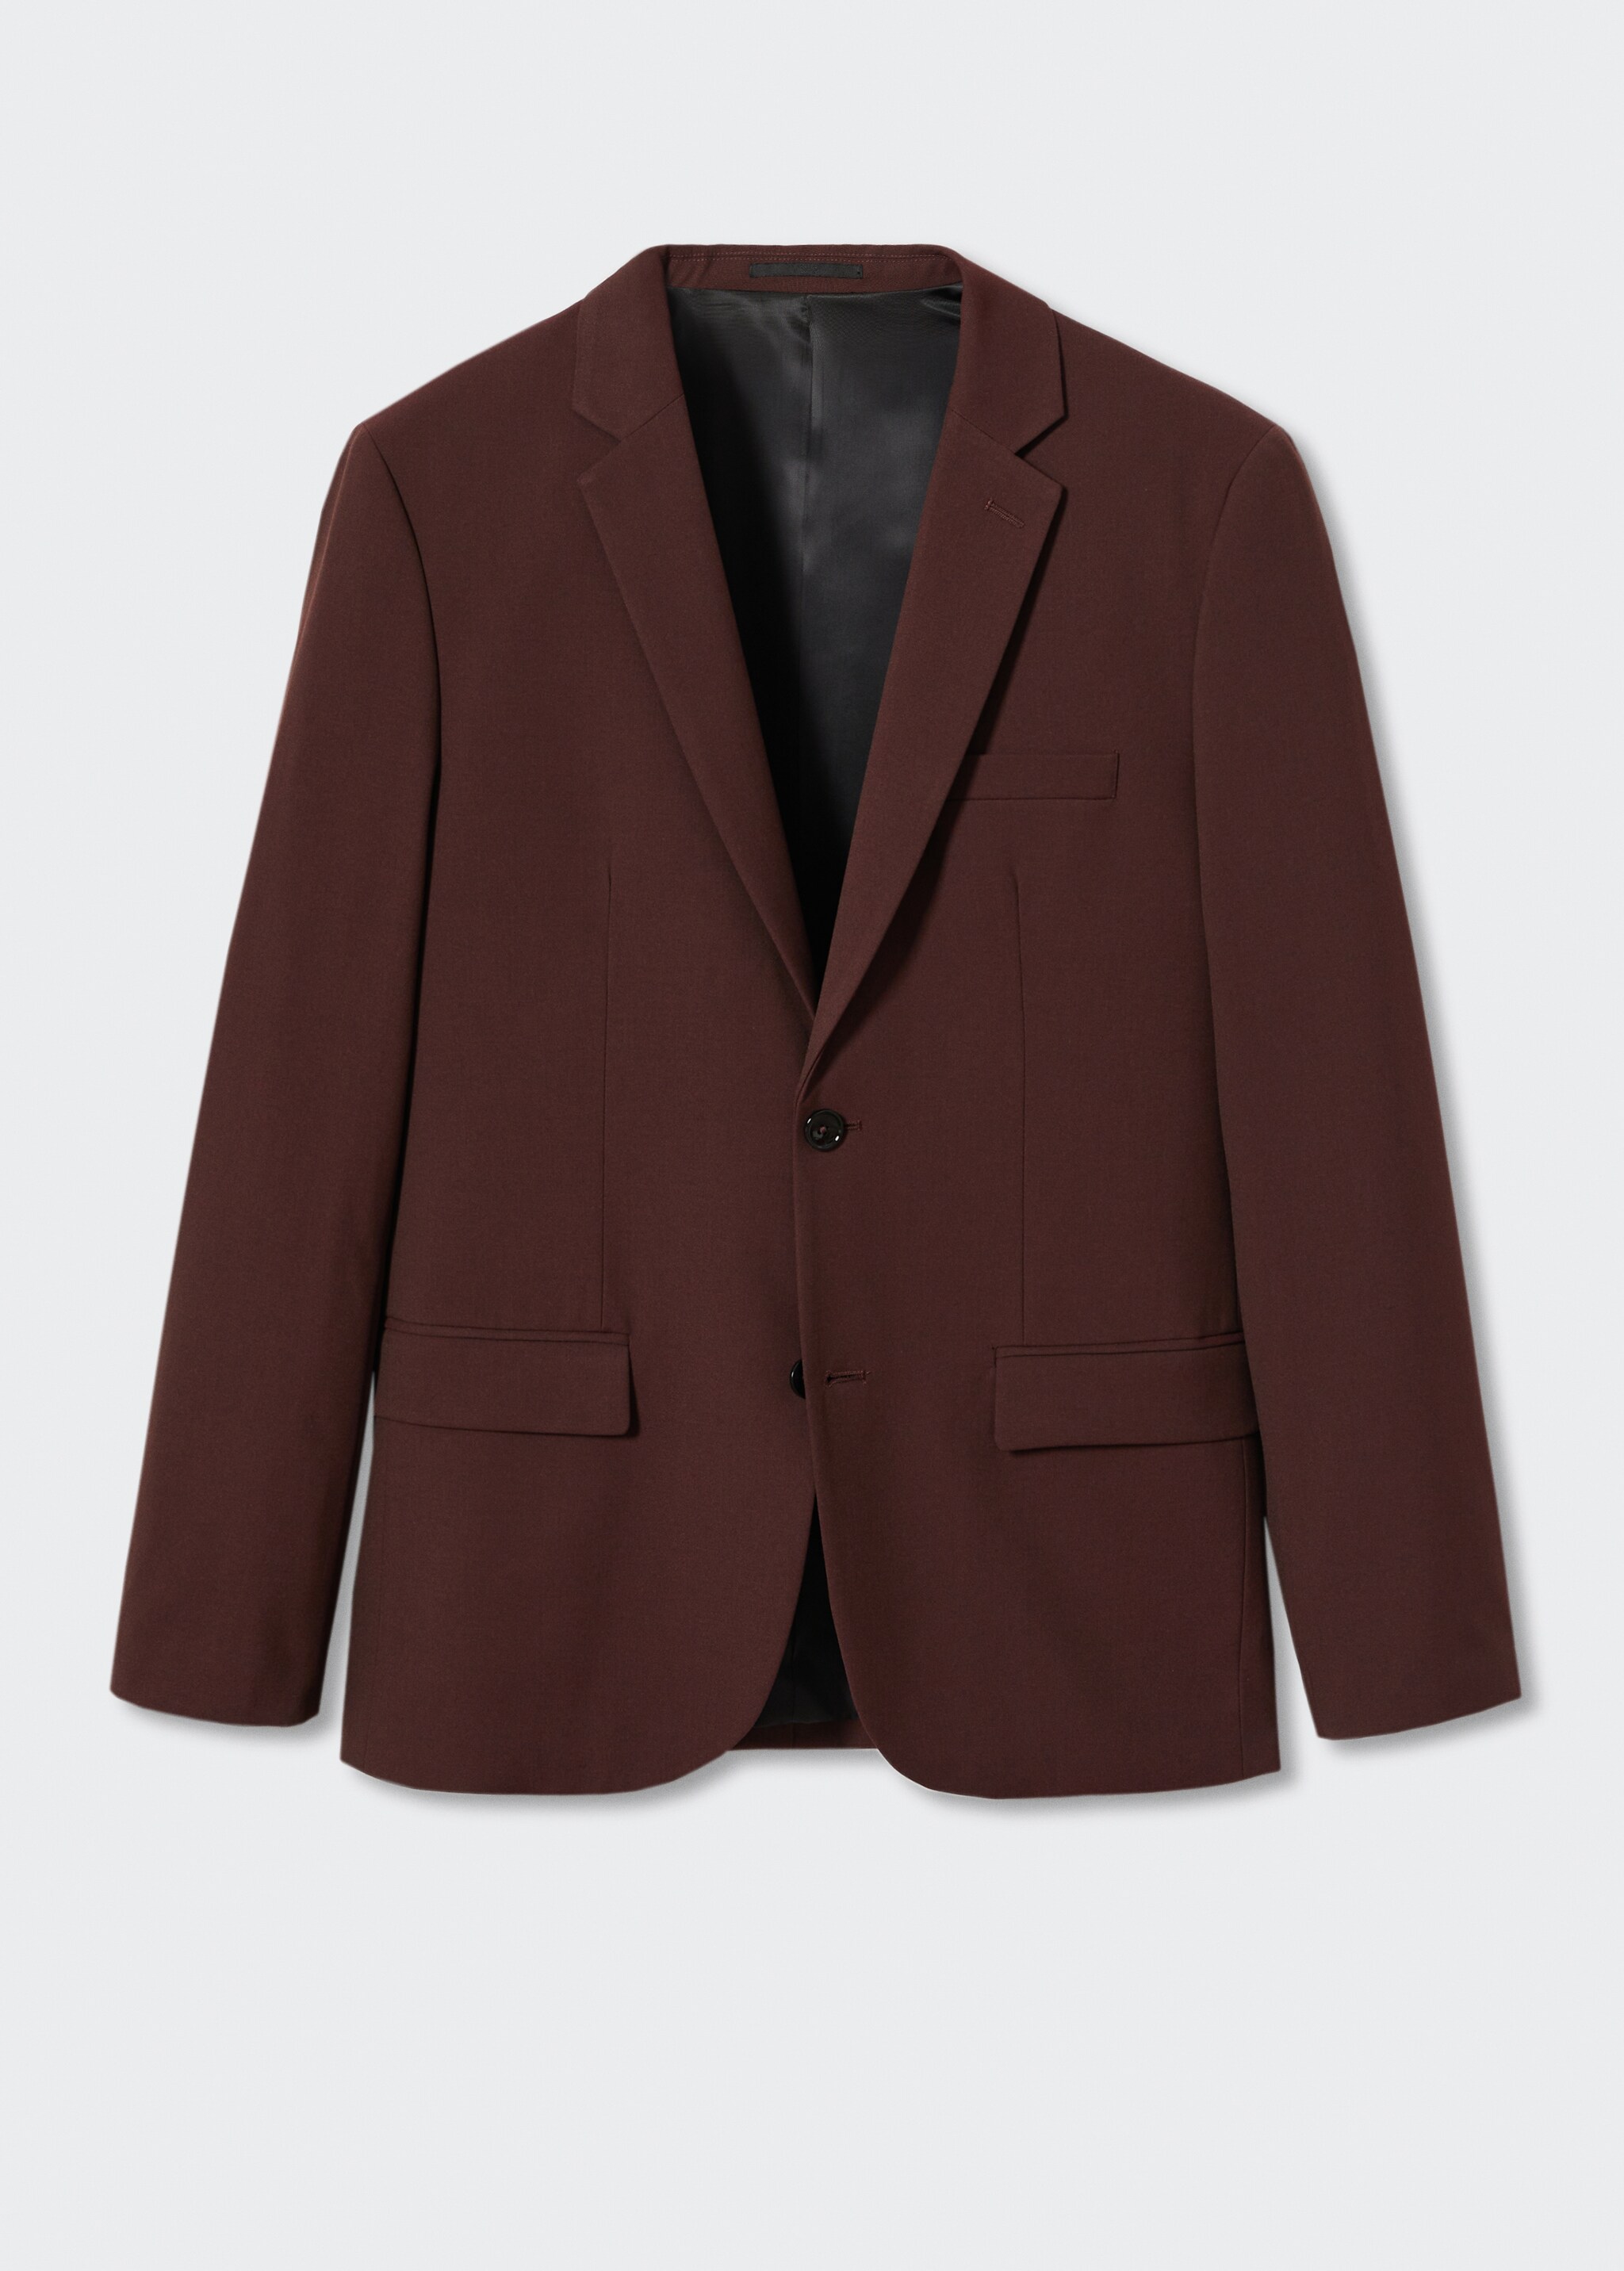 Süper dar kesimli blazer ceket - Modelsiz ürün